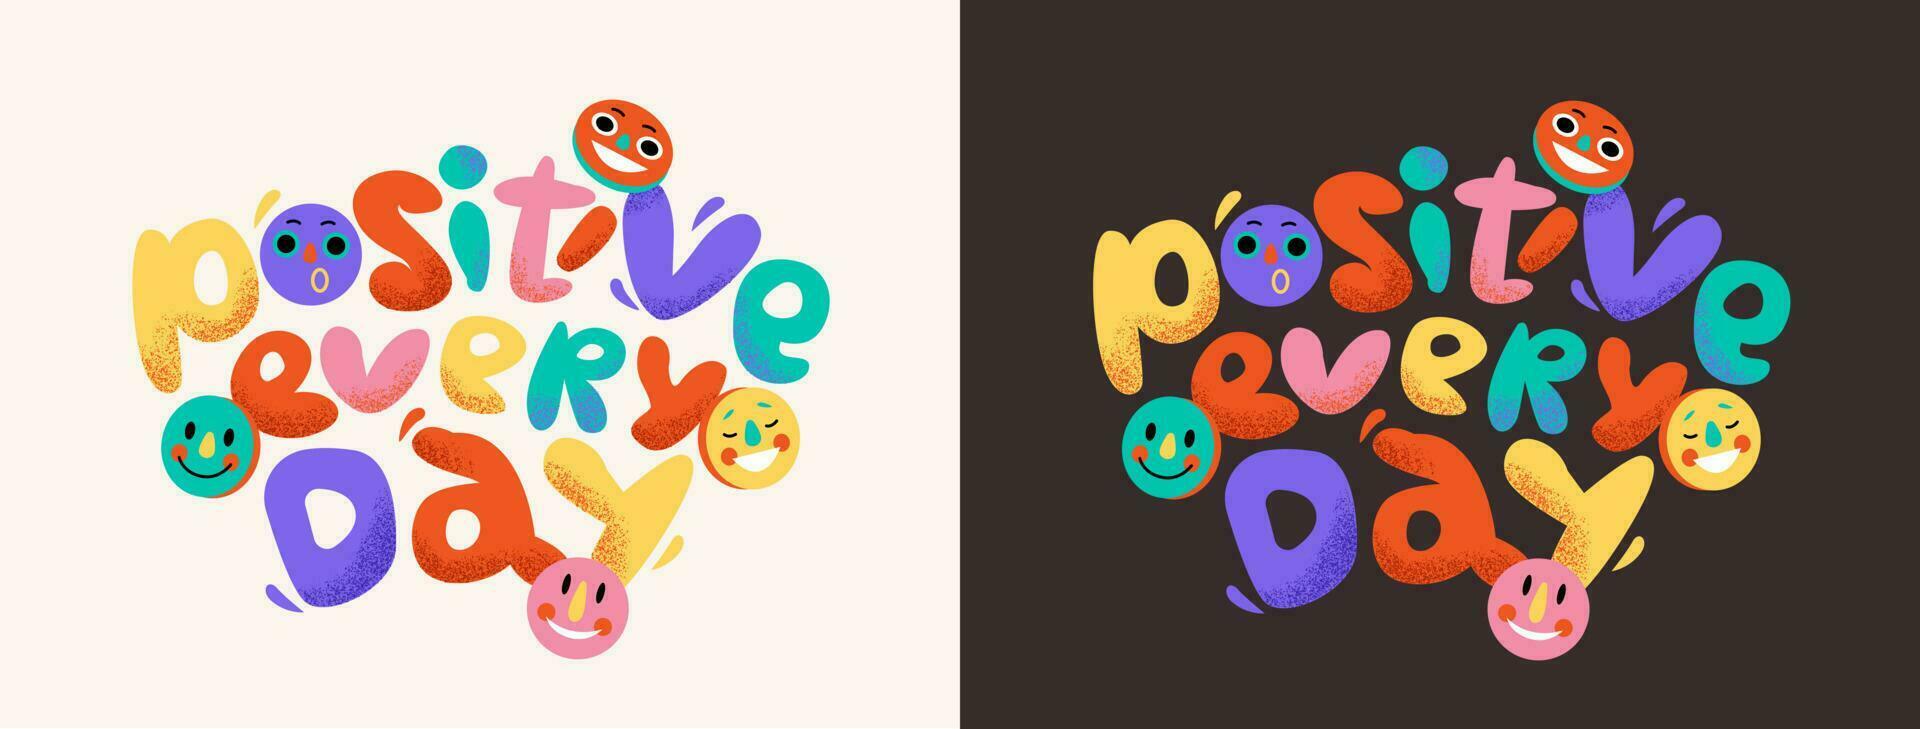 positiv jeder Tag motivierend Poster mit abstrakt Briefe und lächelnd Emojis. Blase Schriftart im das groovig Stil. Vektor Illustration